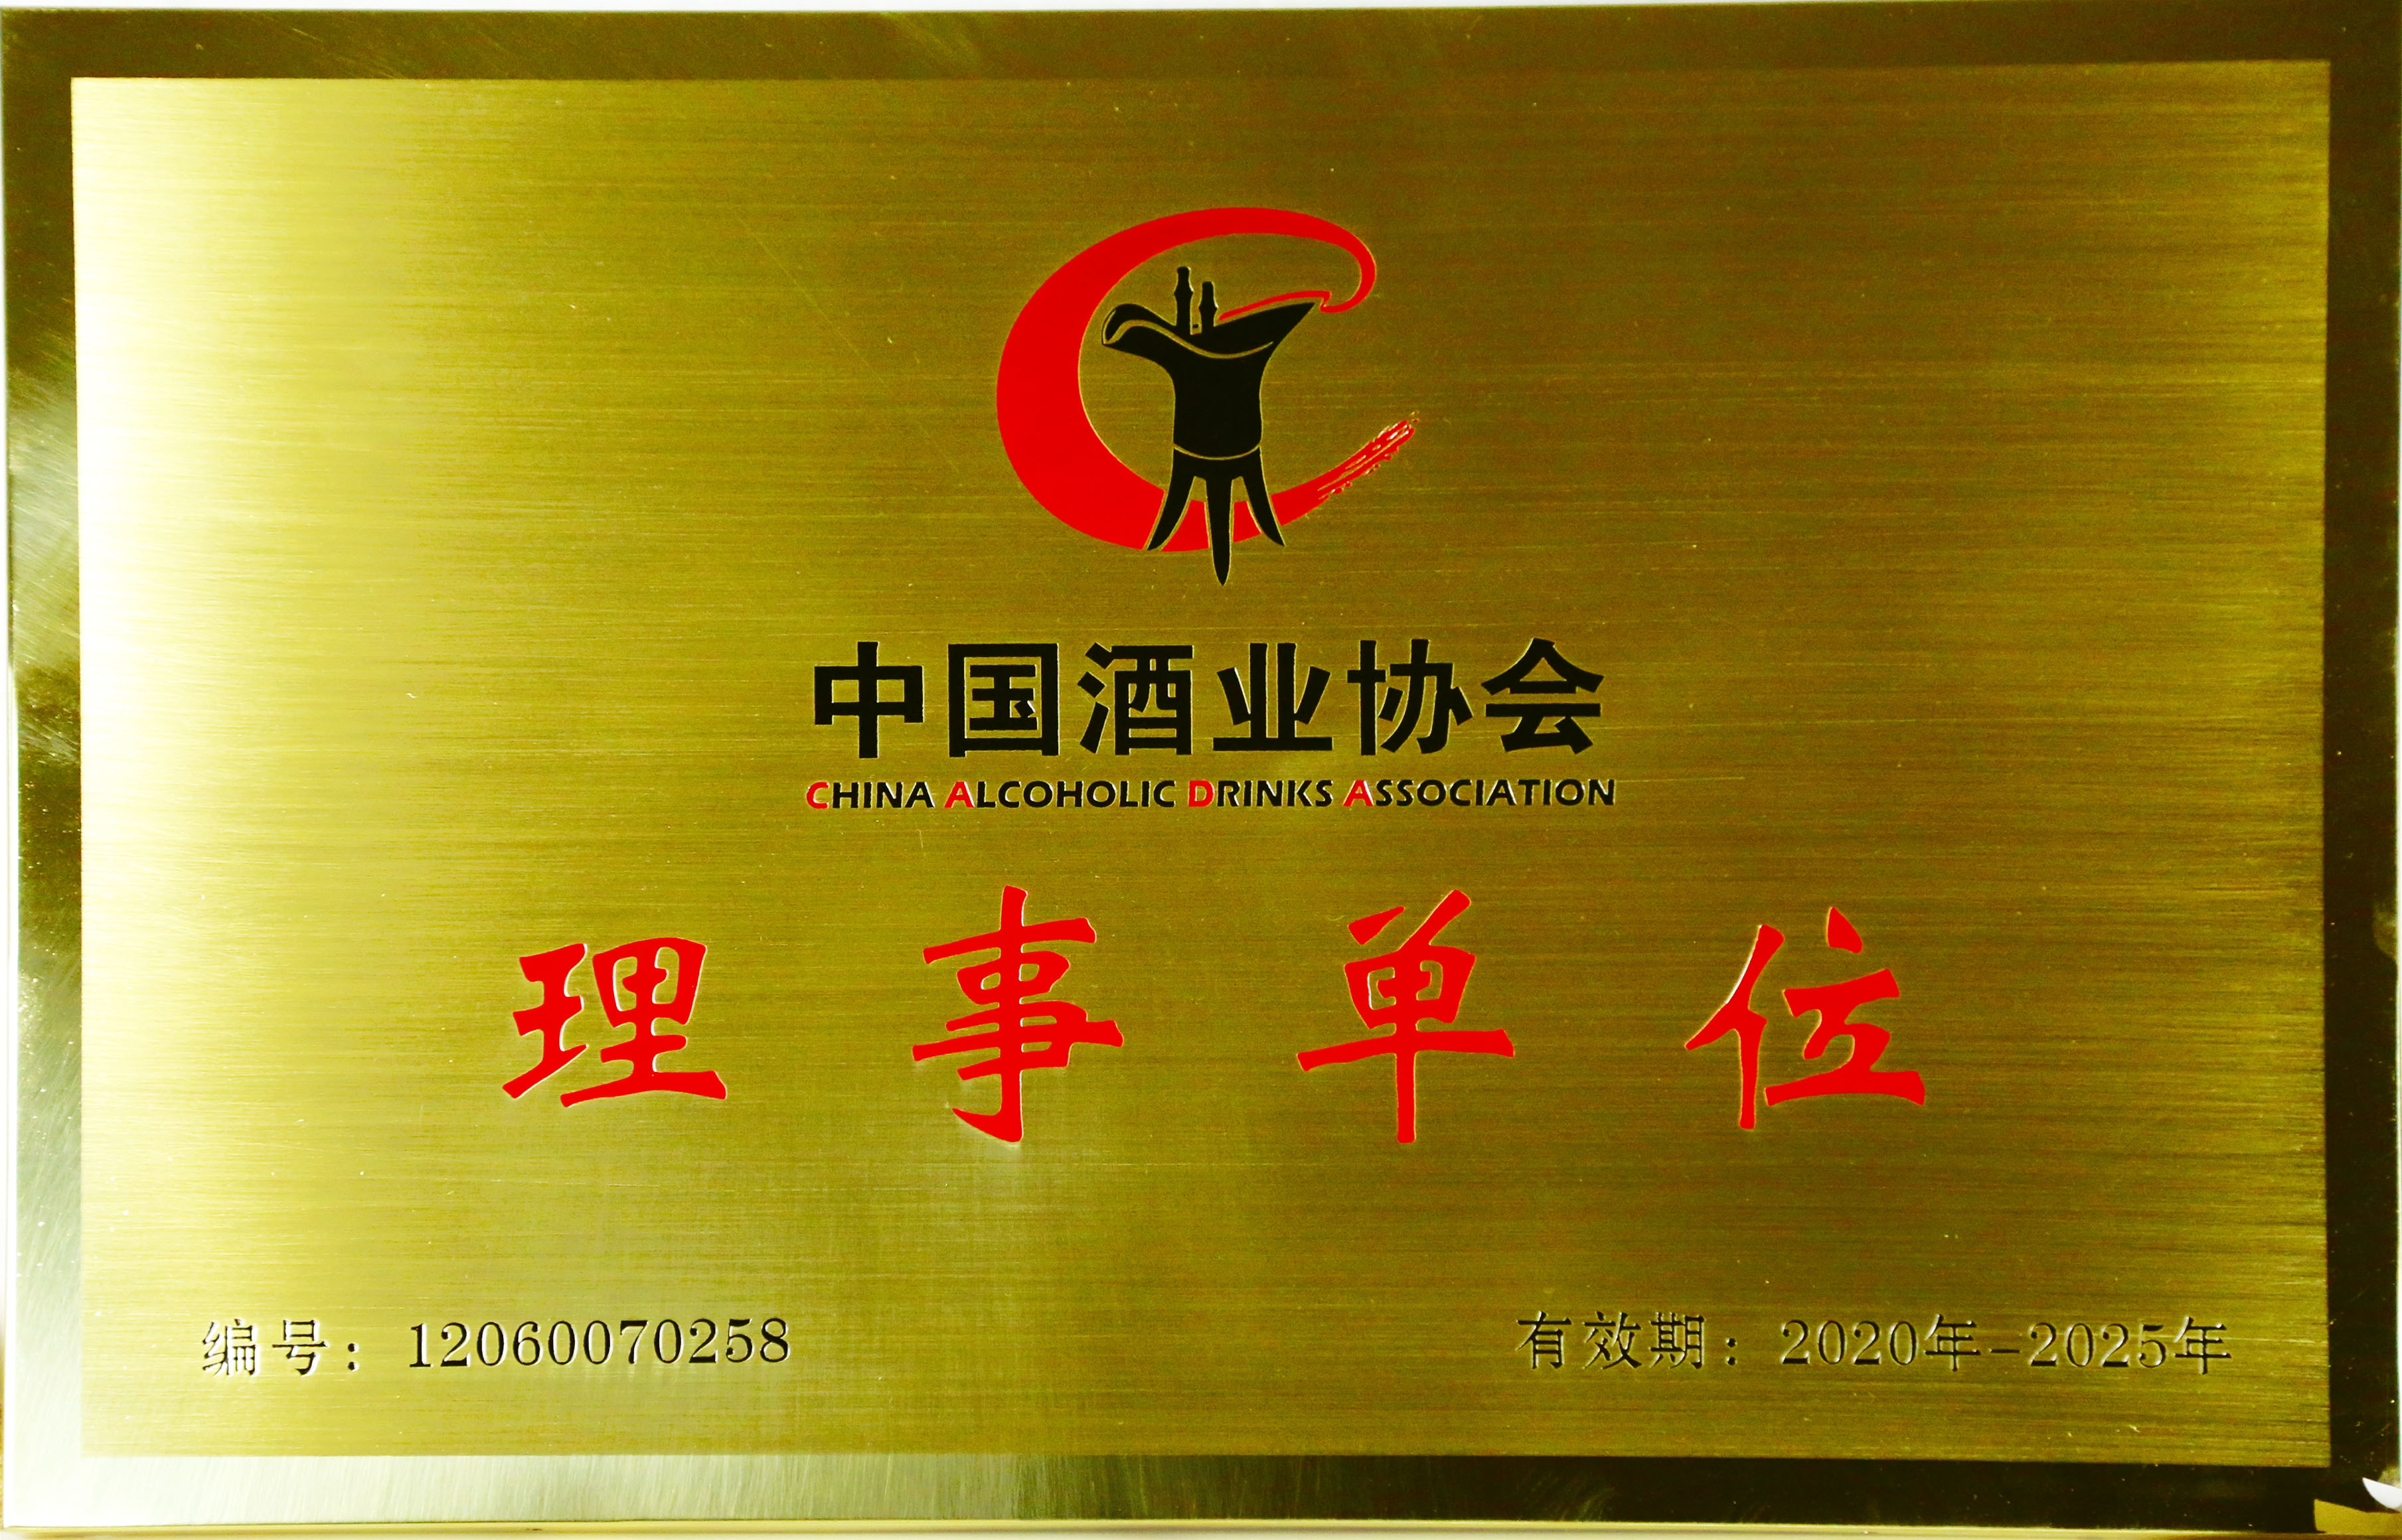 2020年，荣获“中国酒业协会理事单位”